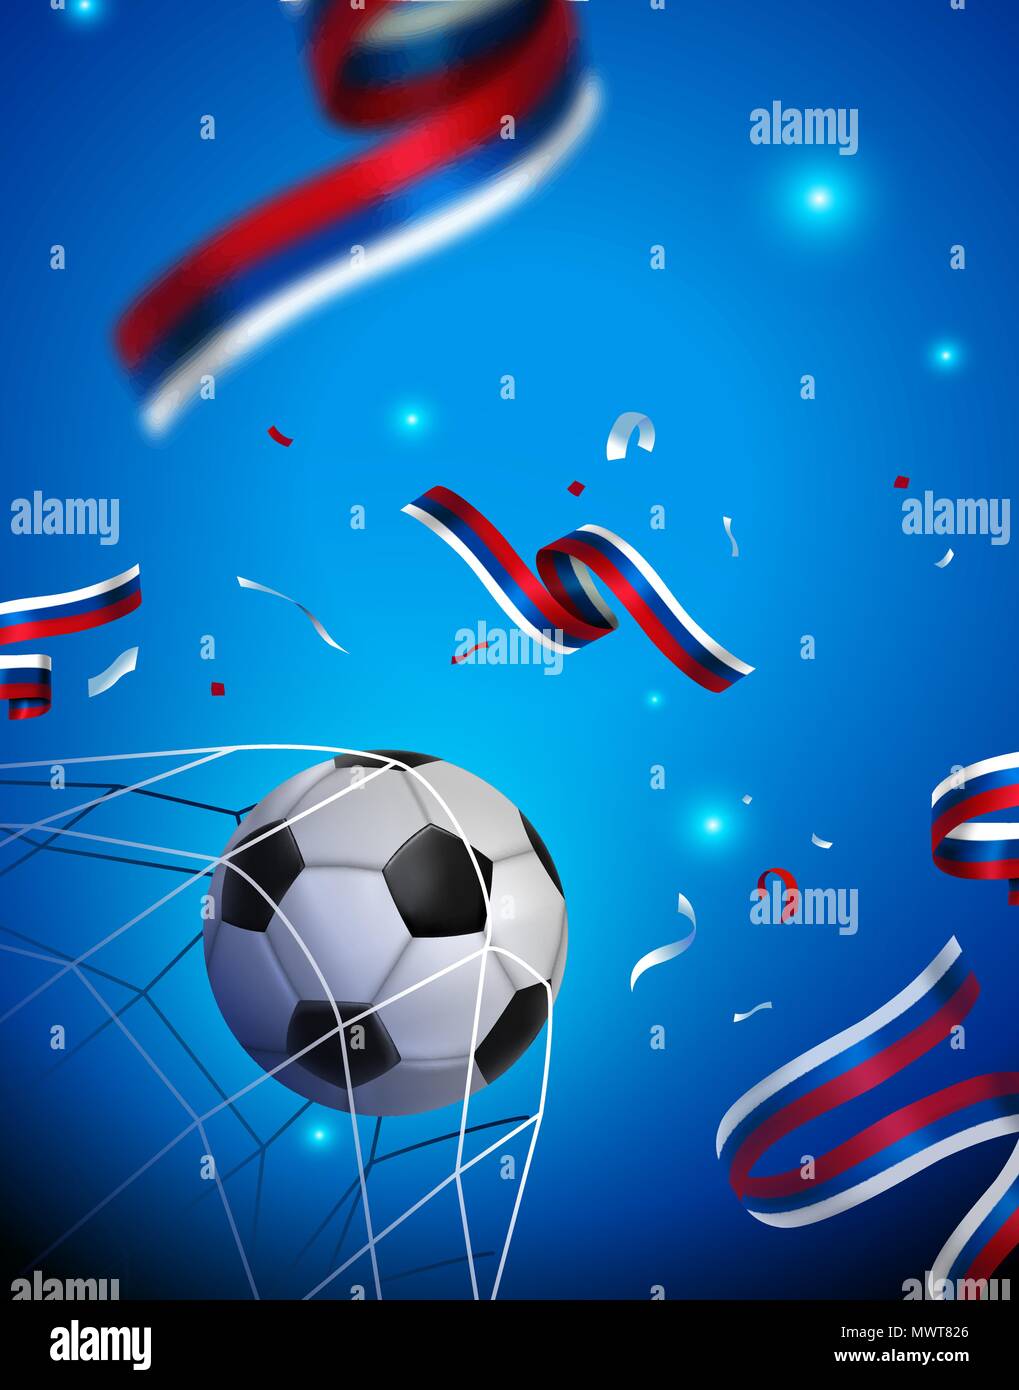 Fußball-Spiel Meisterschaft Poster für einen russischen Ereignis. Russland Landesflagge Dekoration mit Fußball-Ball zählenden Ziel. EPS 10 Vektor. Stock Vektor